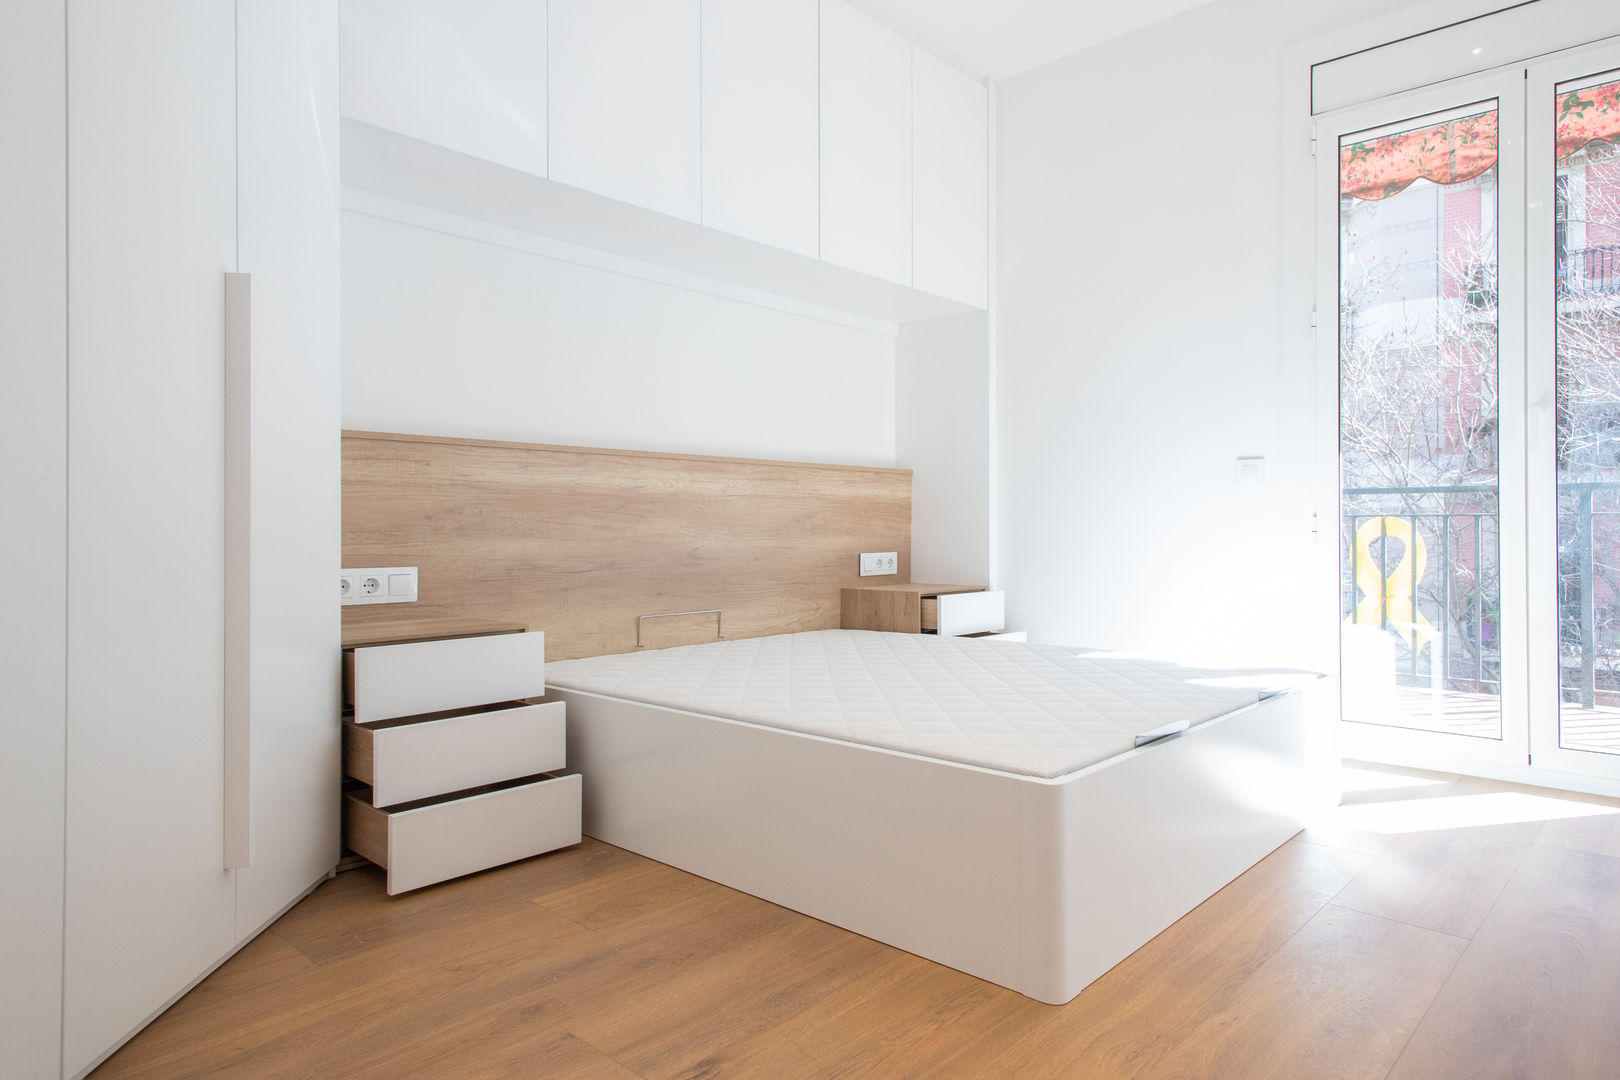 Proyecto de Interiorismo y mobiliario en Barcelona, Grupo Inventia Grupo Inventia Mediterranean style bedroom Concrete